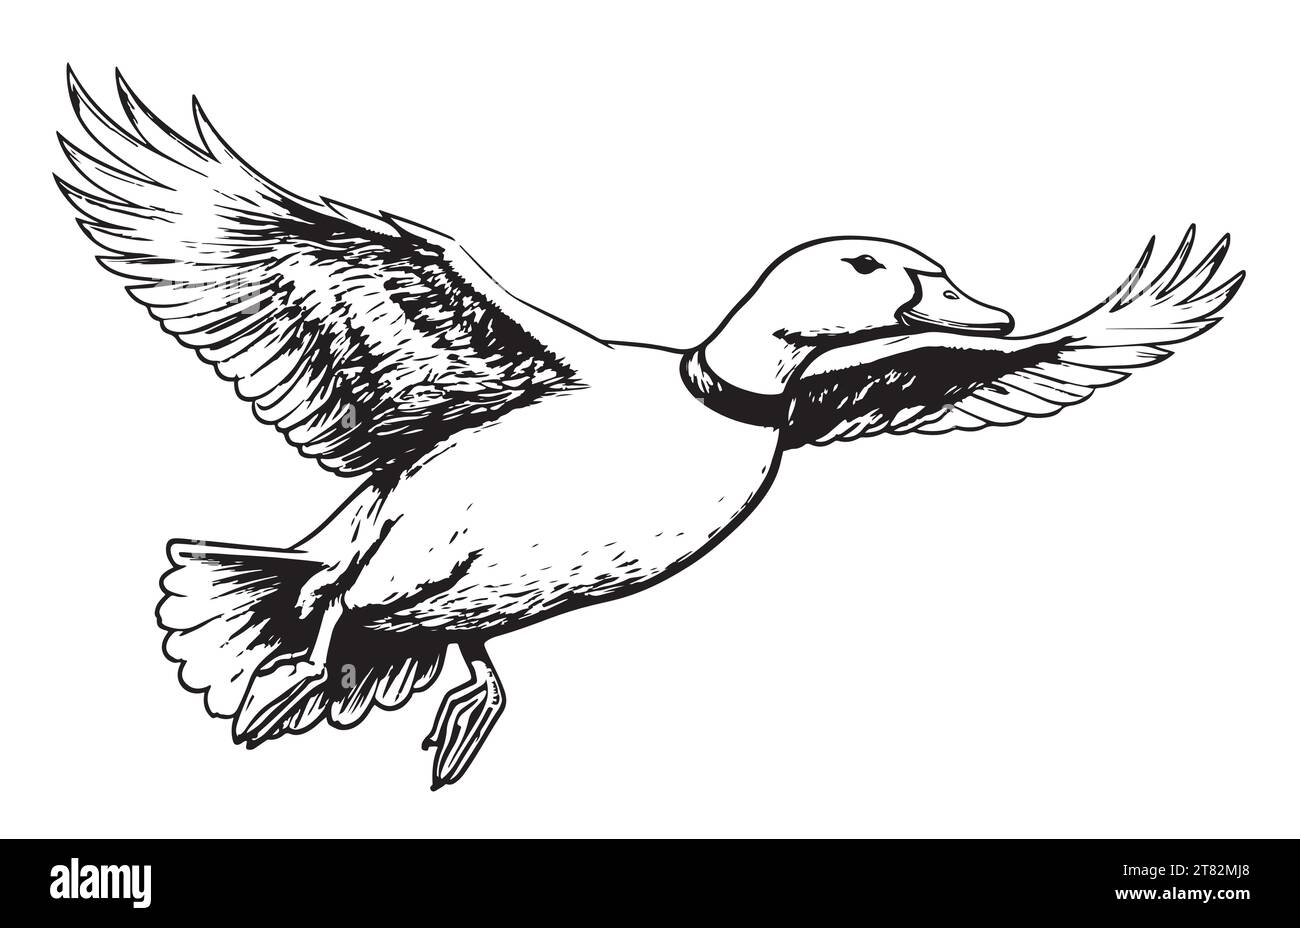 Croquis volant de canard peint illustration vectorielle Bird Farm Illustration de Vecteur